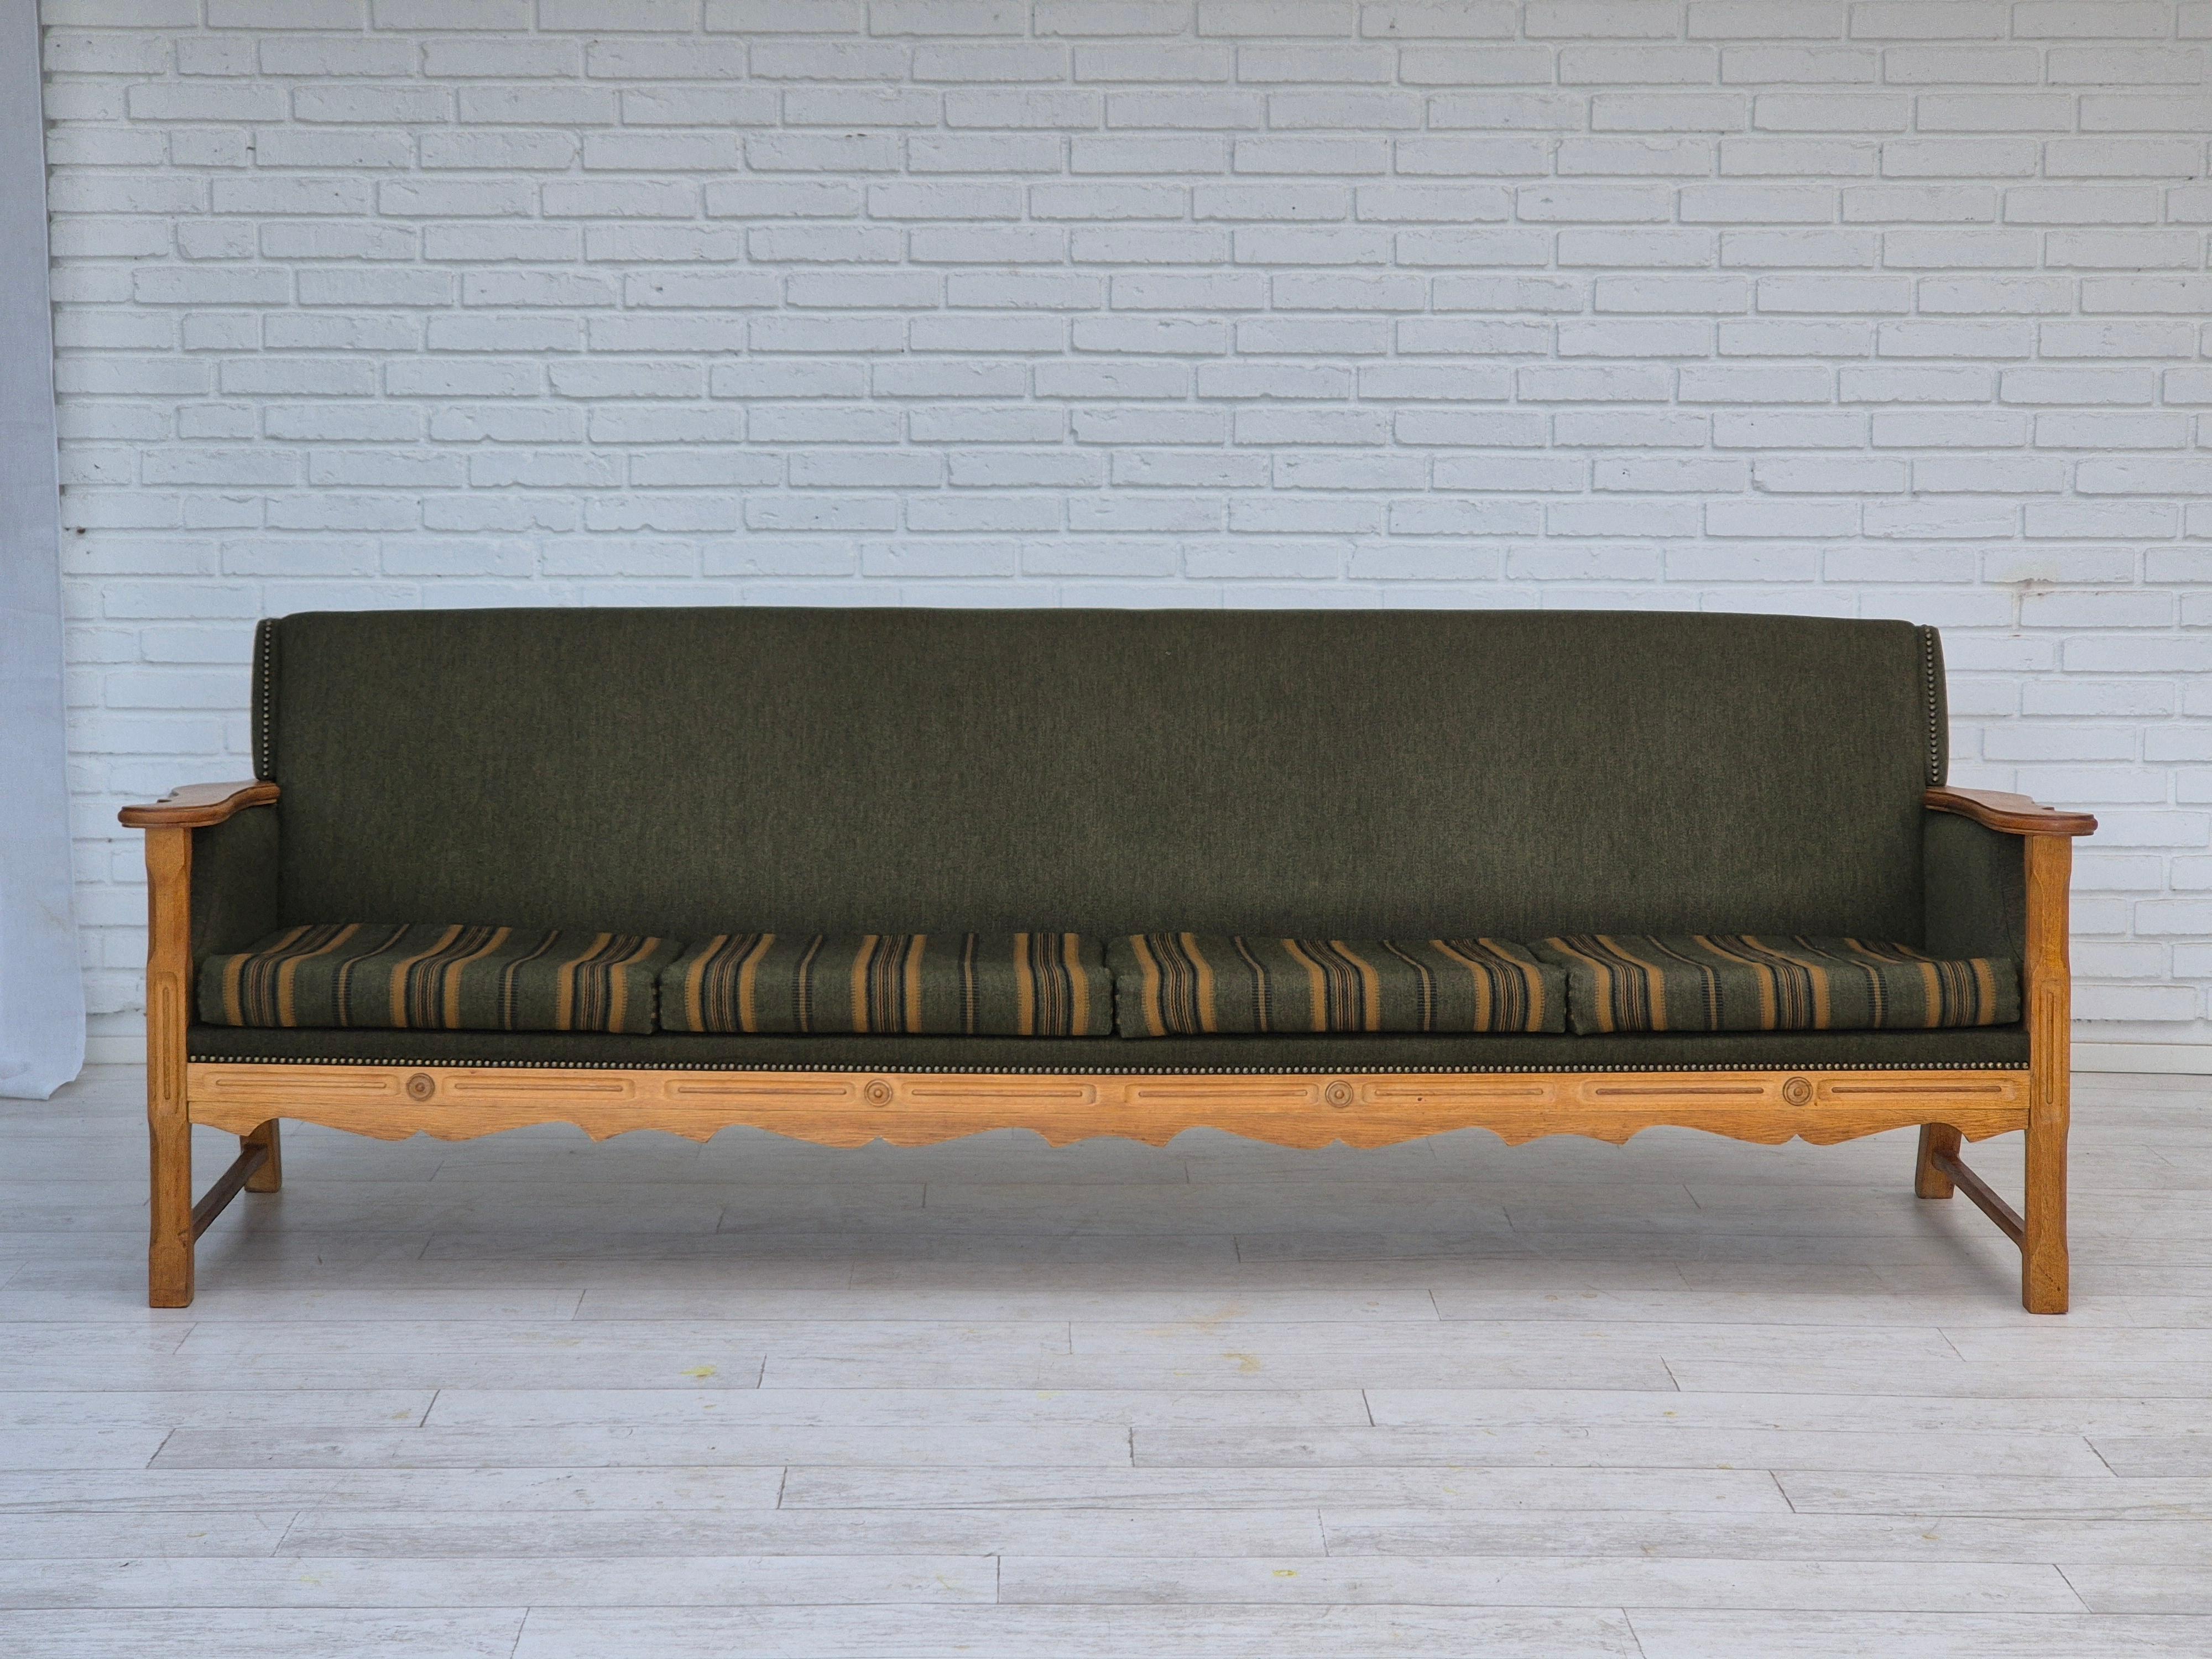 Dänisches 4-Sitzer-Sofa aus den 1970er Jahren in sehr gutem Originalzustand: keine Gerüche und keine Flecken. Möbel aus grünem Wollstoff, neuer Möbelschaum in den Sitzpolstern. Eichenholz. Hergestellt von einem dänischen Möbelhersteller etwa in den